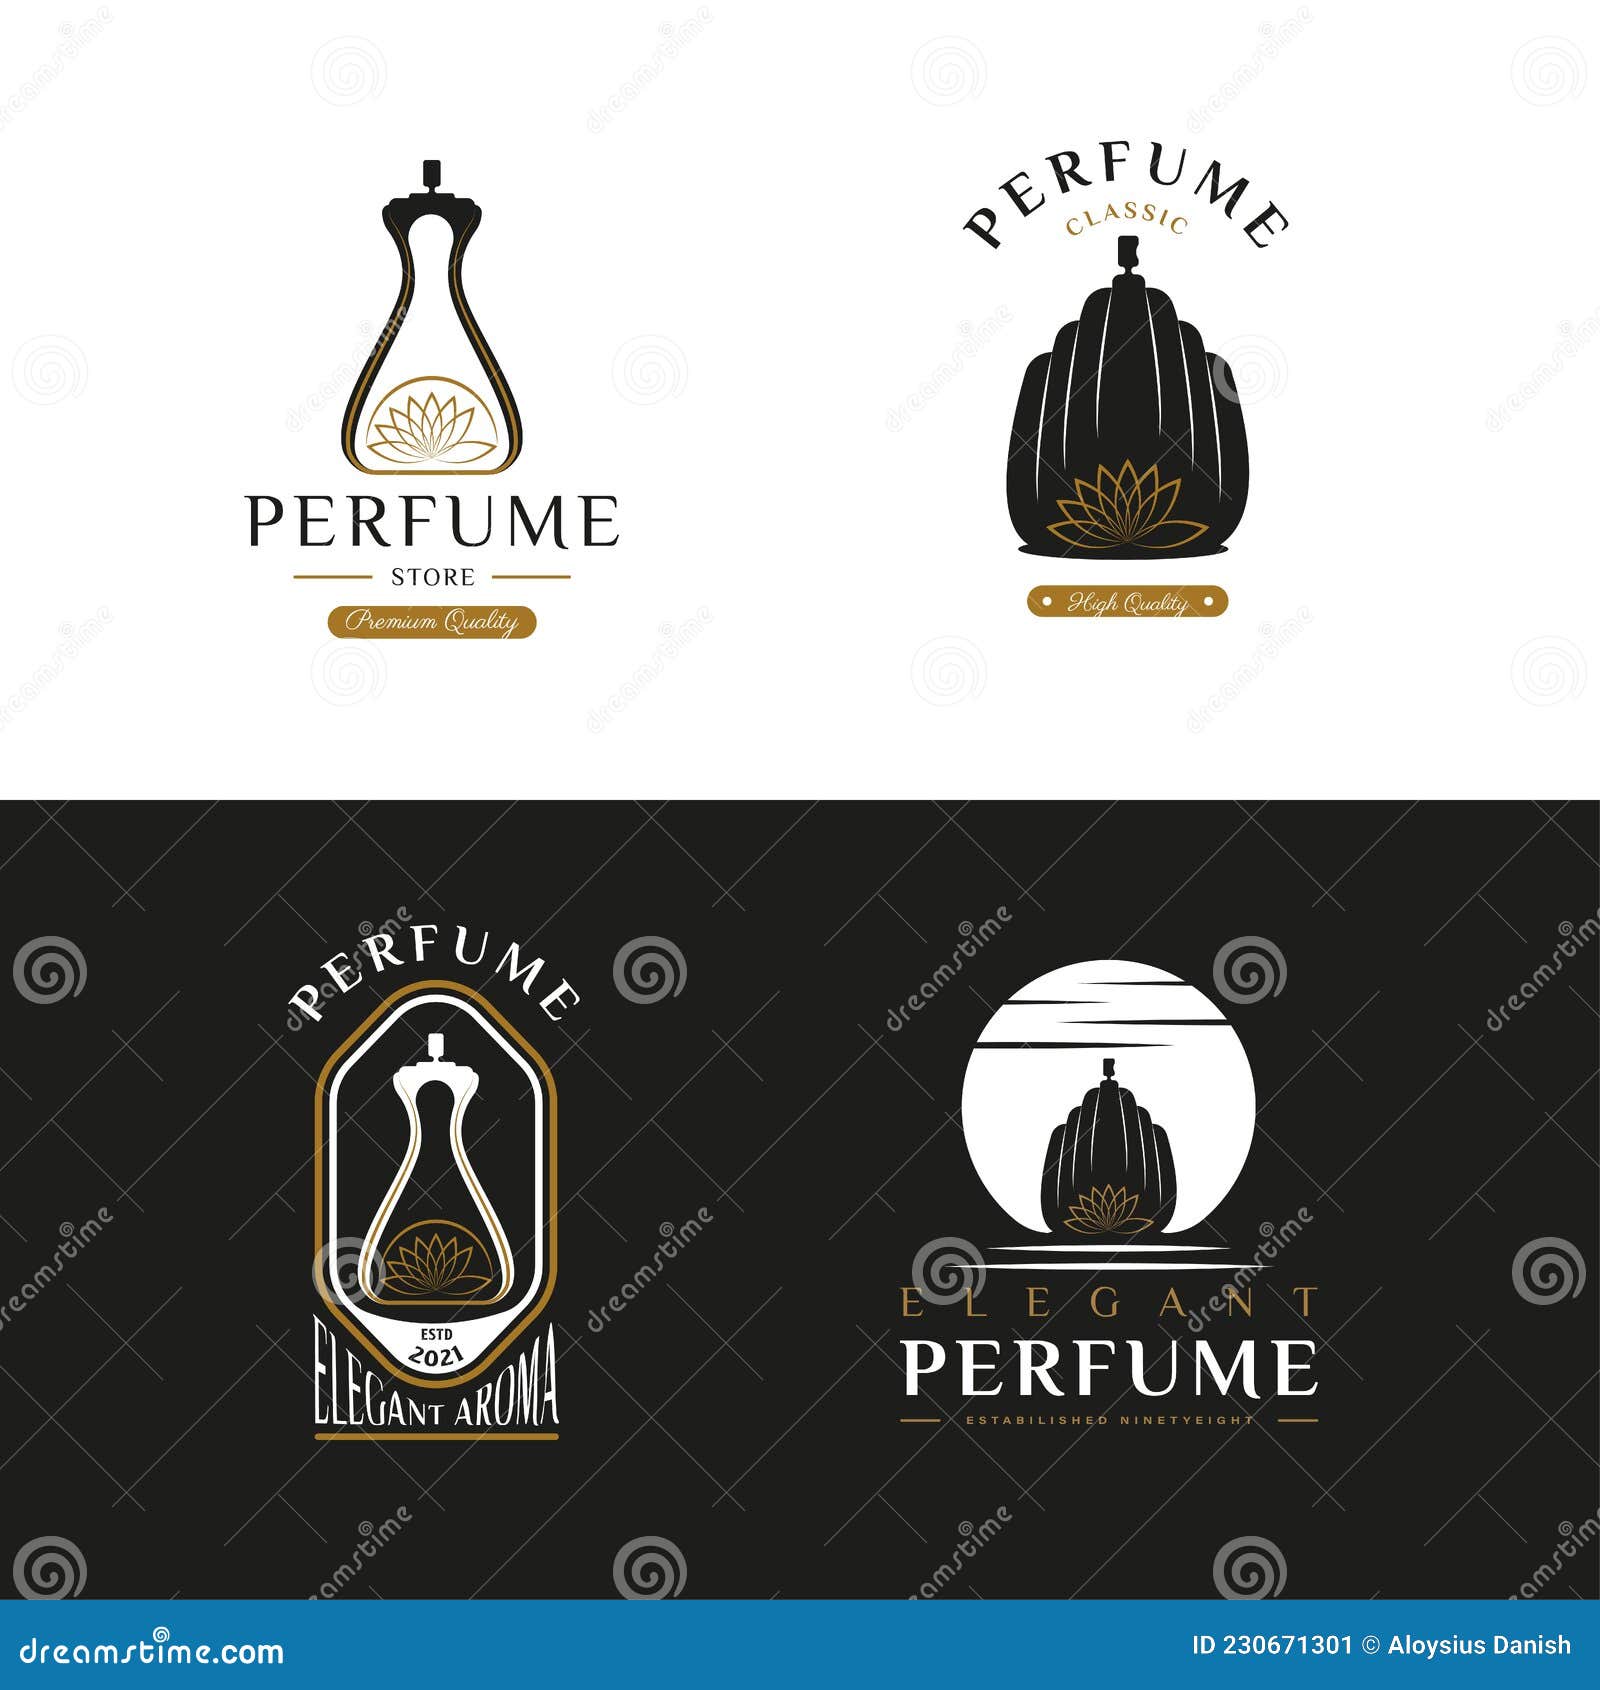 Premium Vector, Luxury perfume logo template design